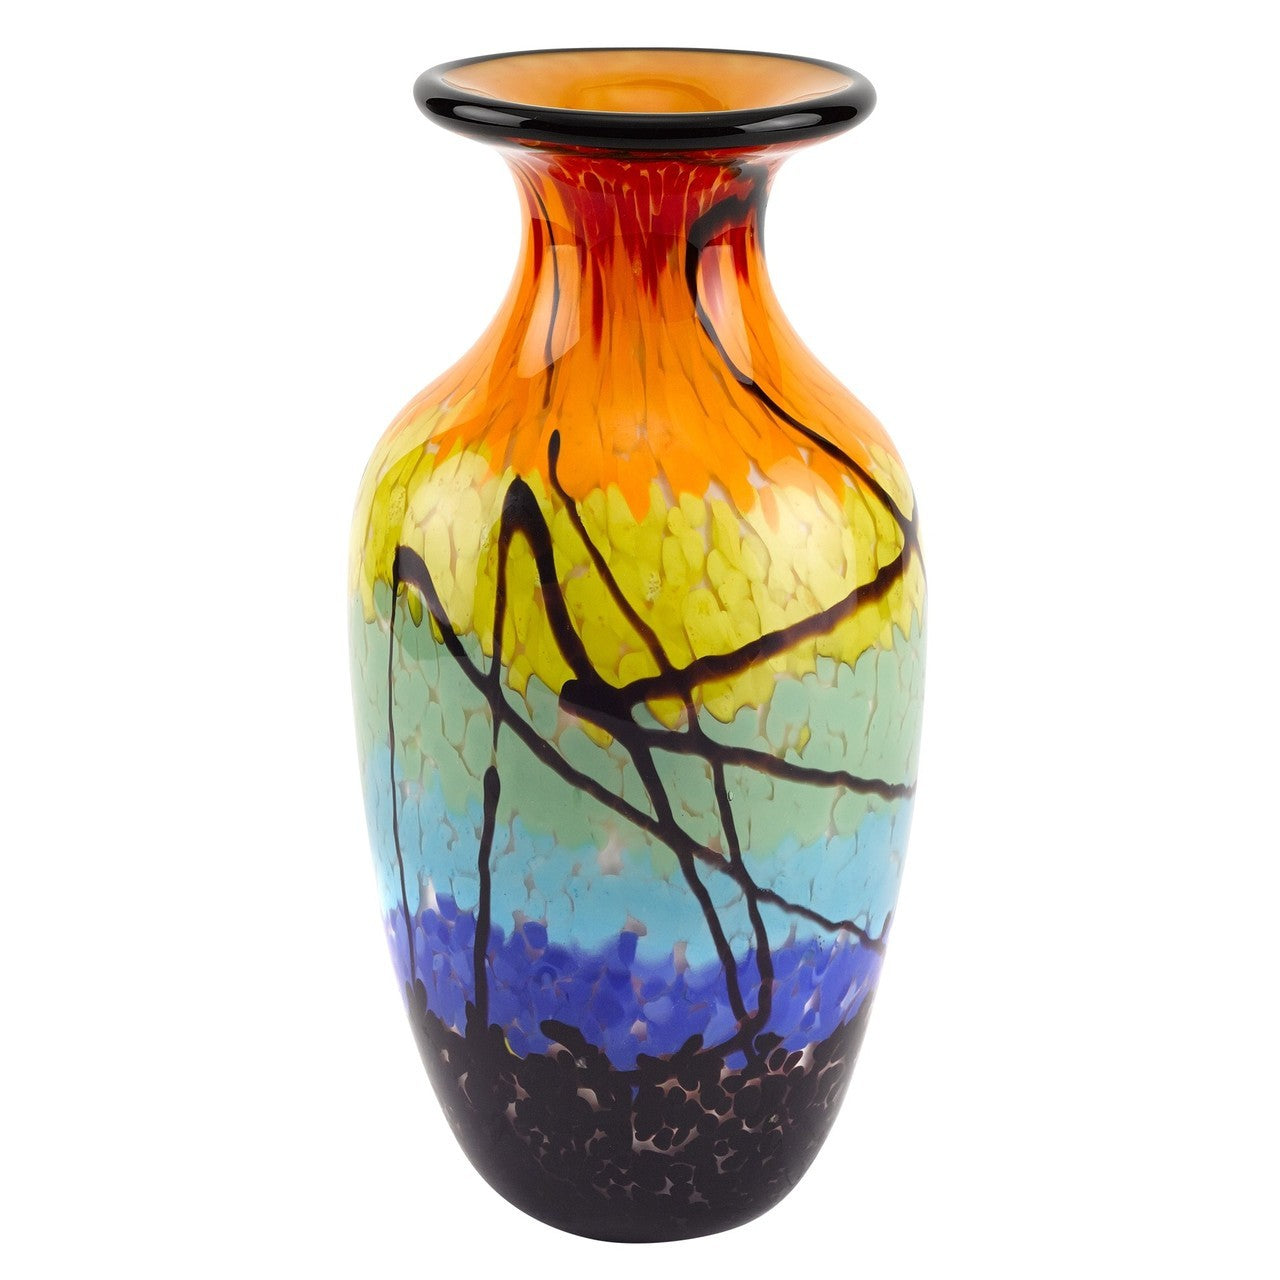 Allura Colorful Murano Style Art Glass Vase